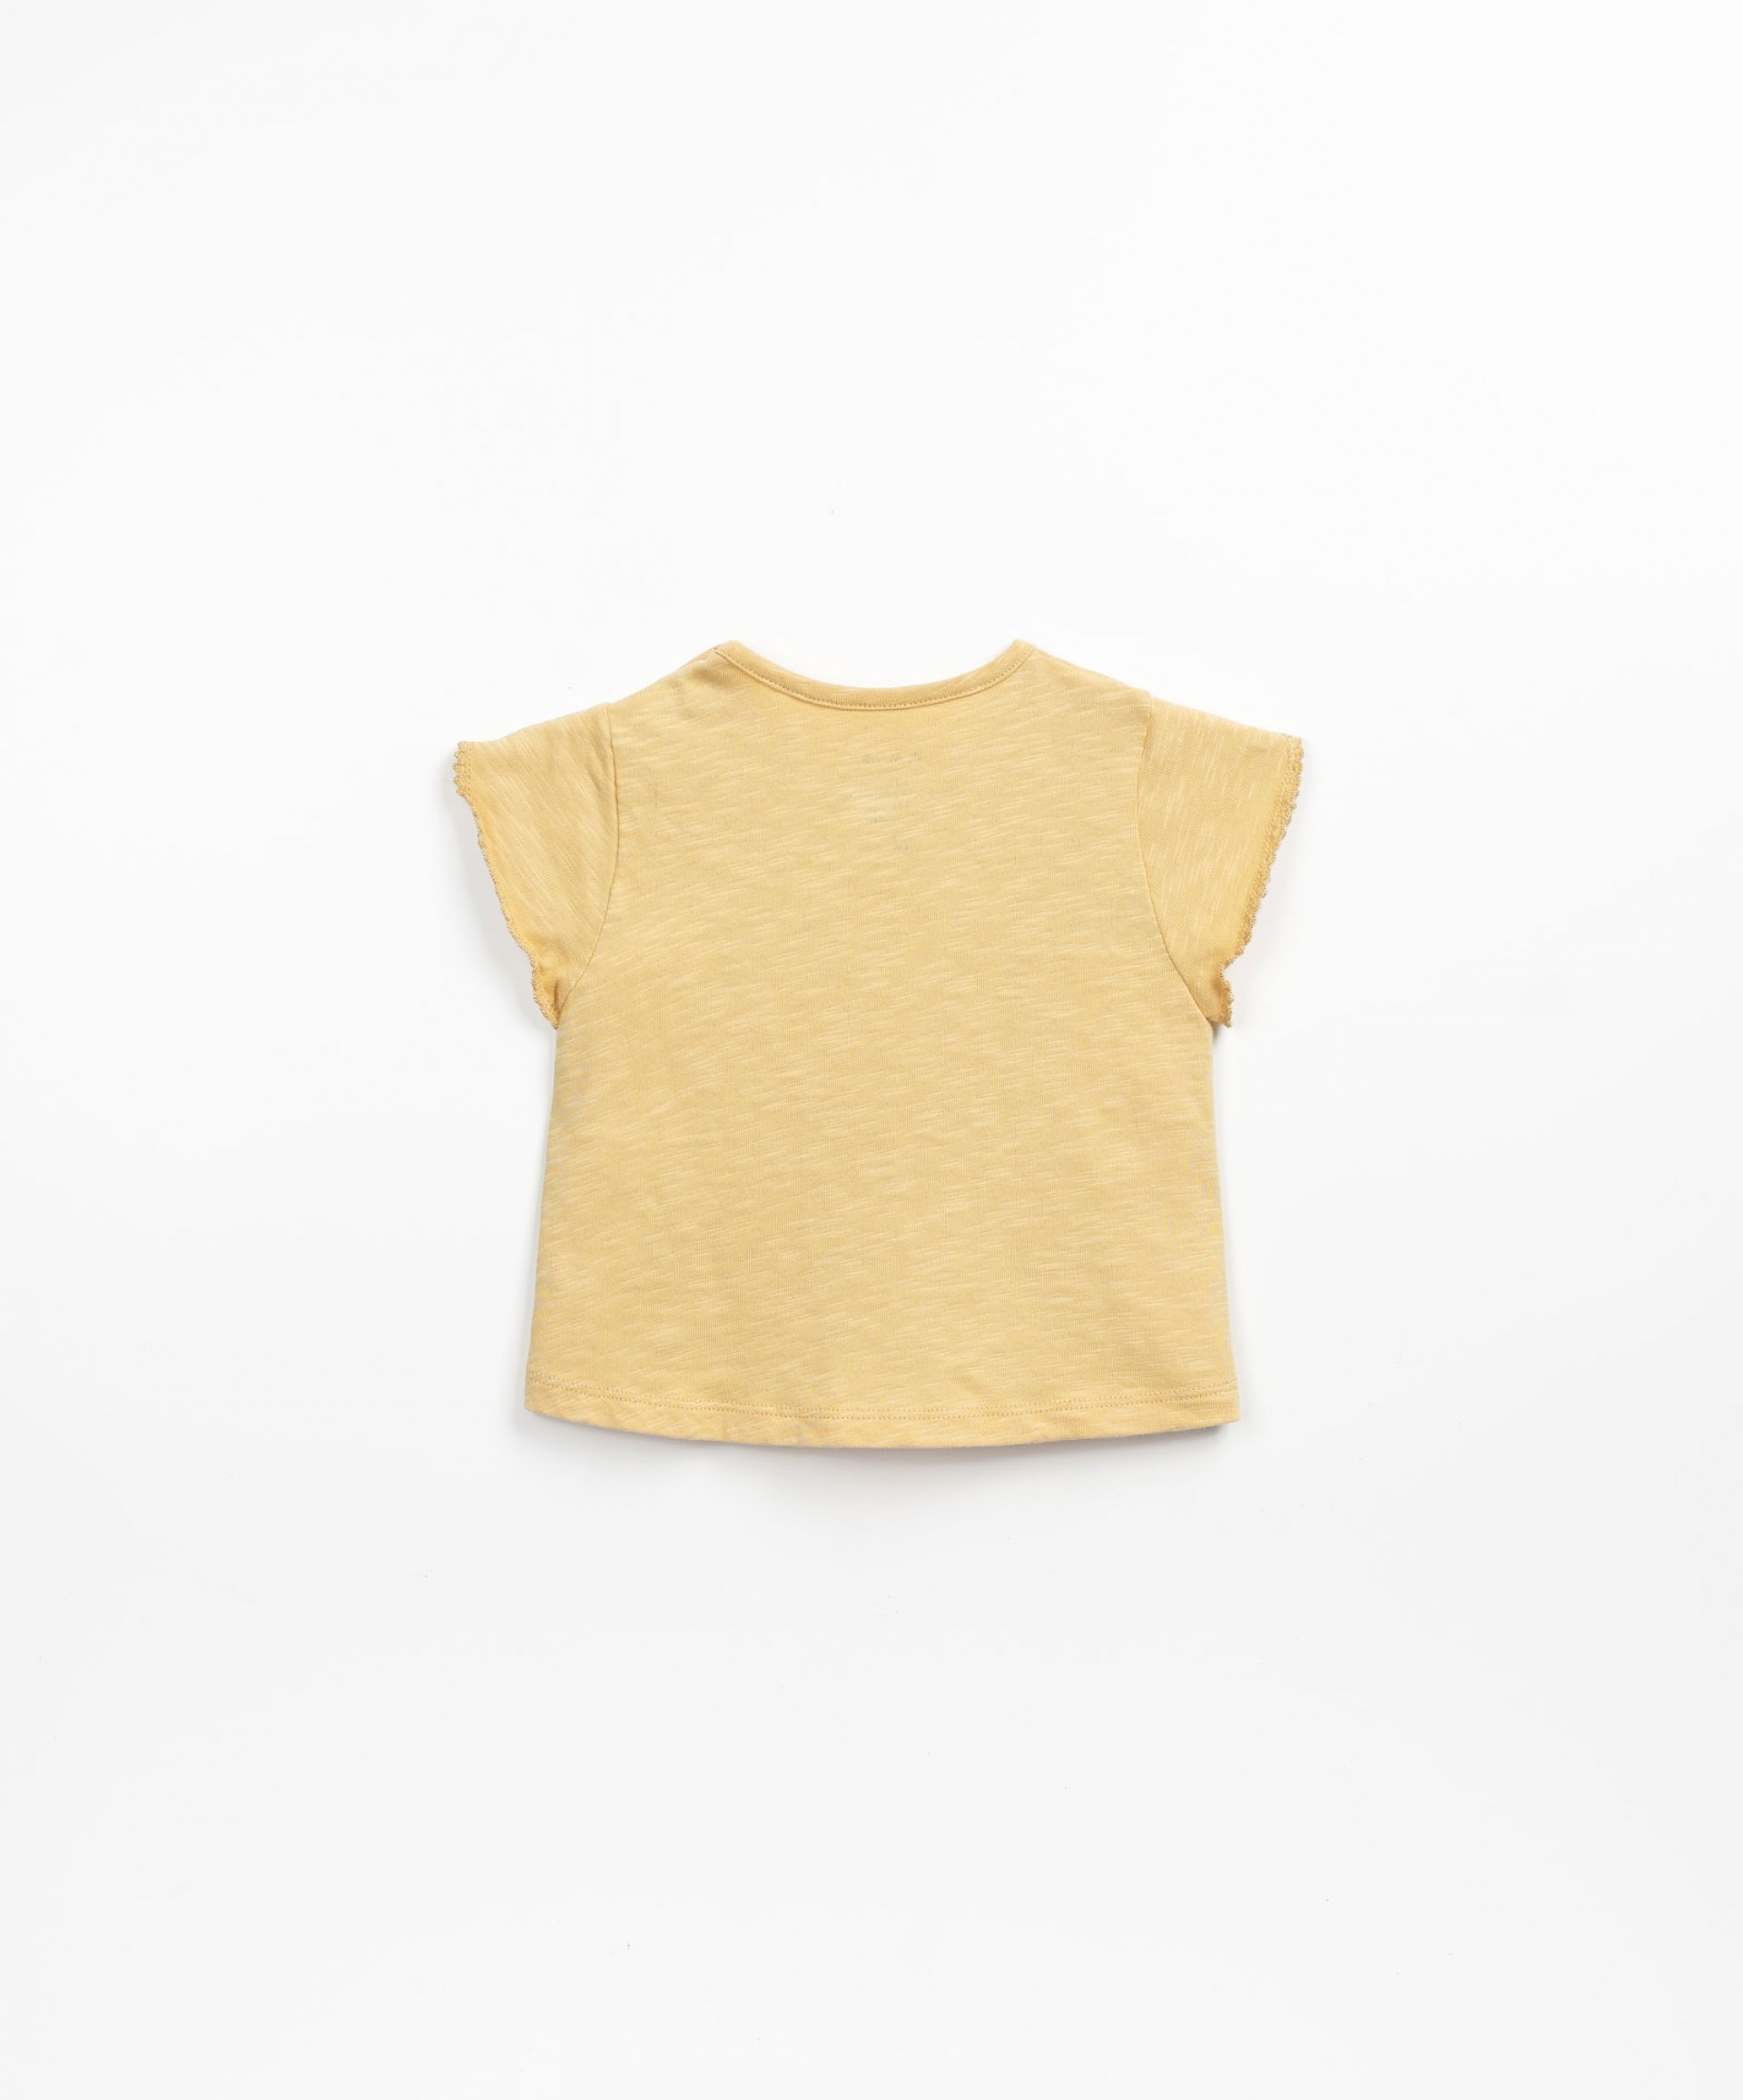 T-shirt en coton biologique avec des boutons sur l'paule | Textile Art